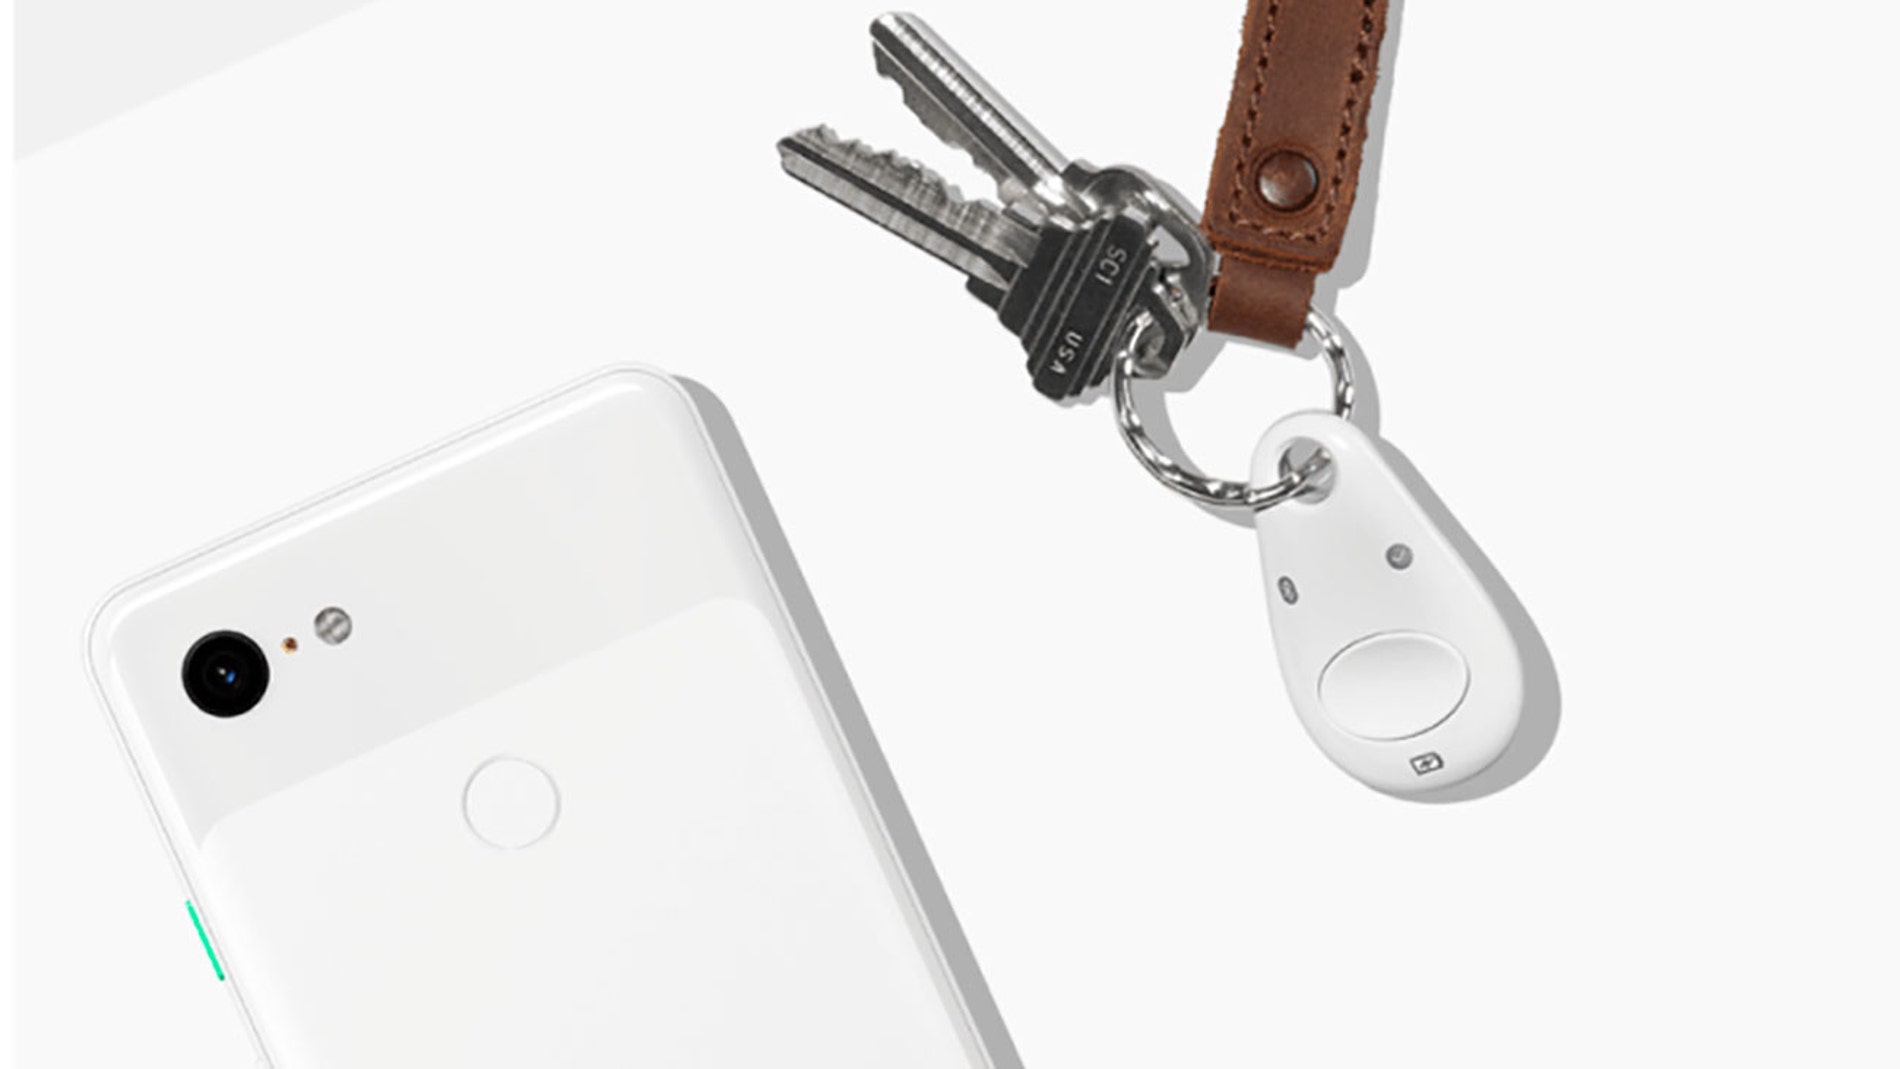 Google Titan Key